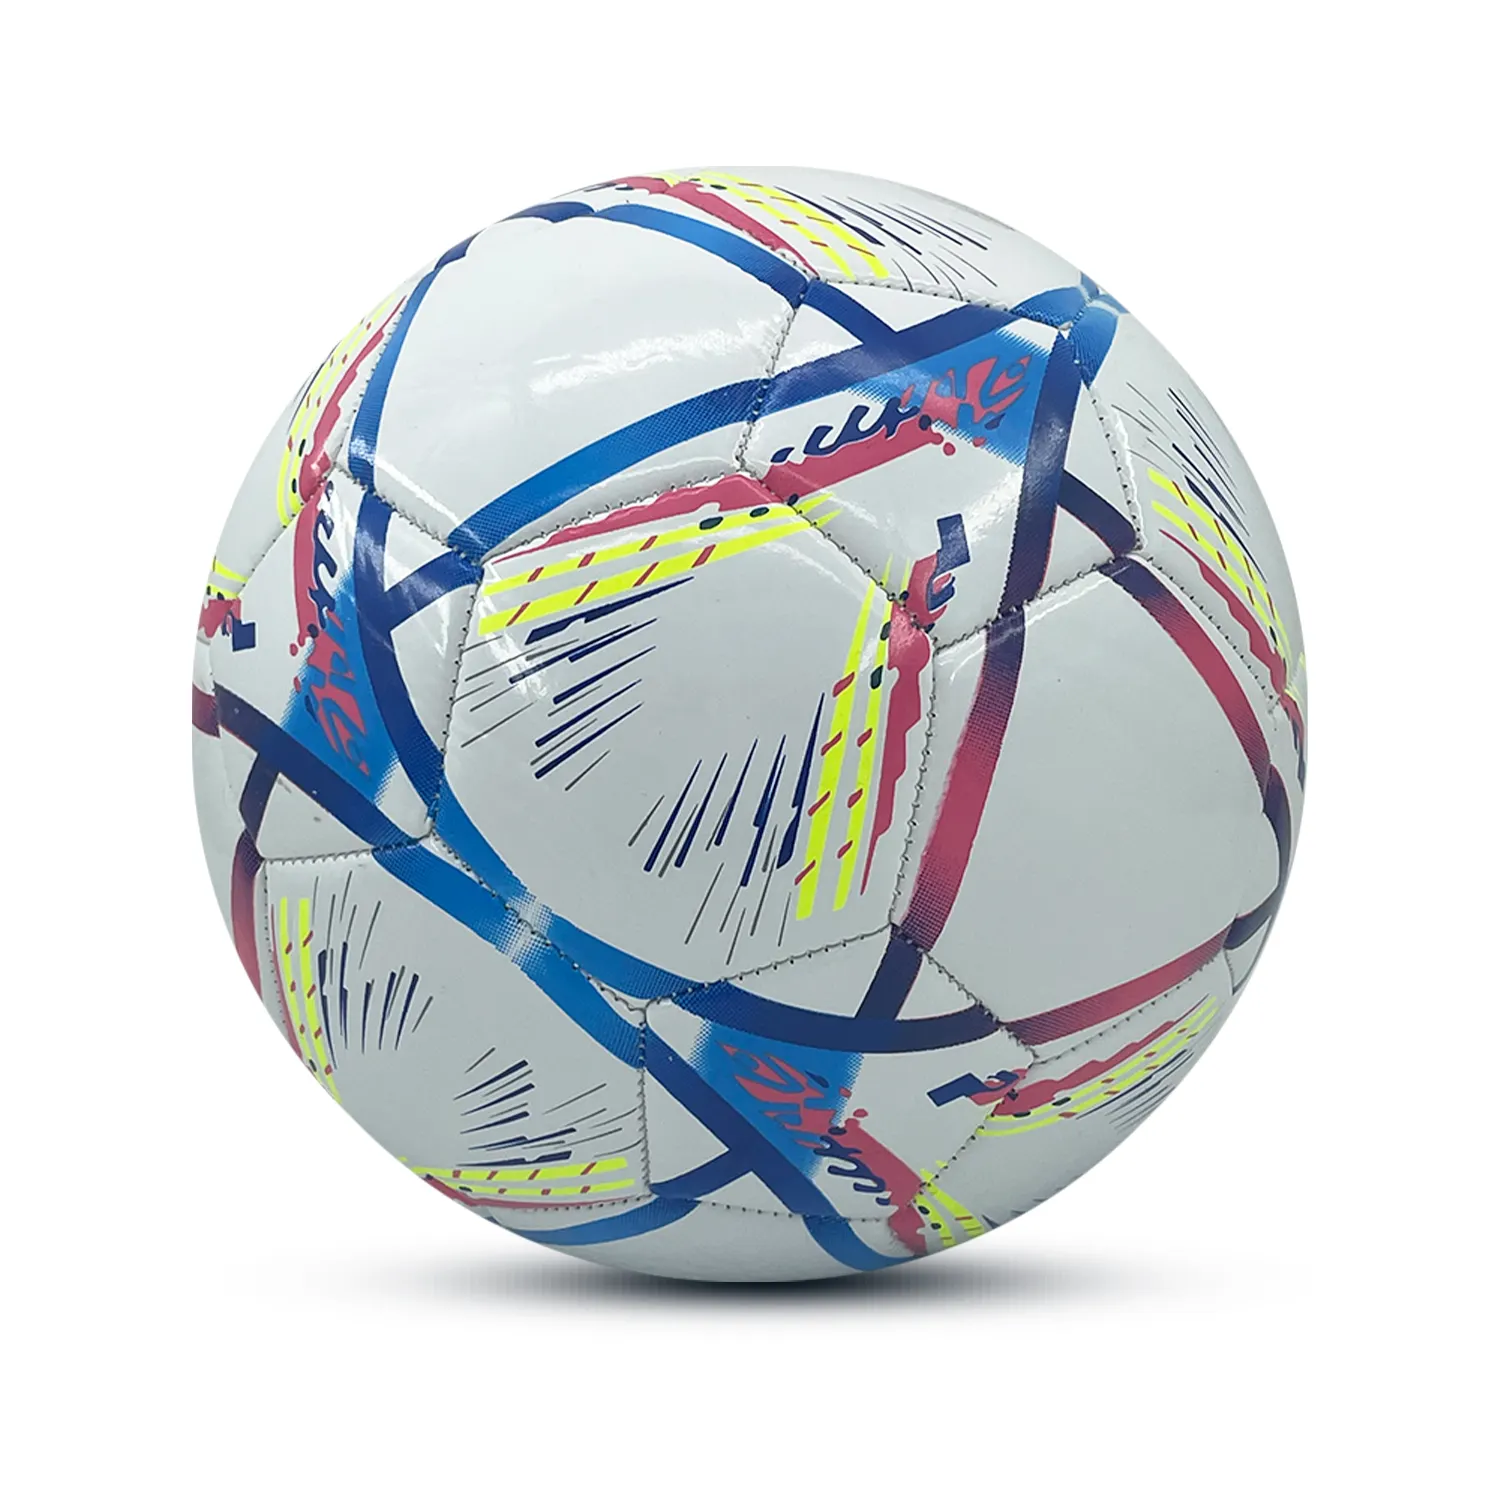 Профессиональный Размер 5 PU футбольный мяч под заказ официальный матч футбольные мячи футбольный мяч для тренировок